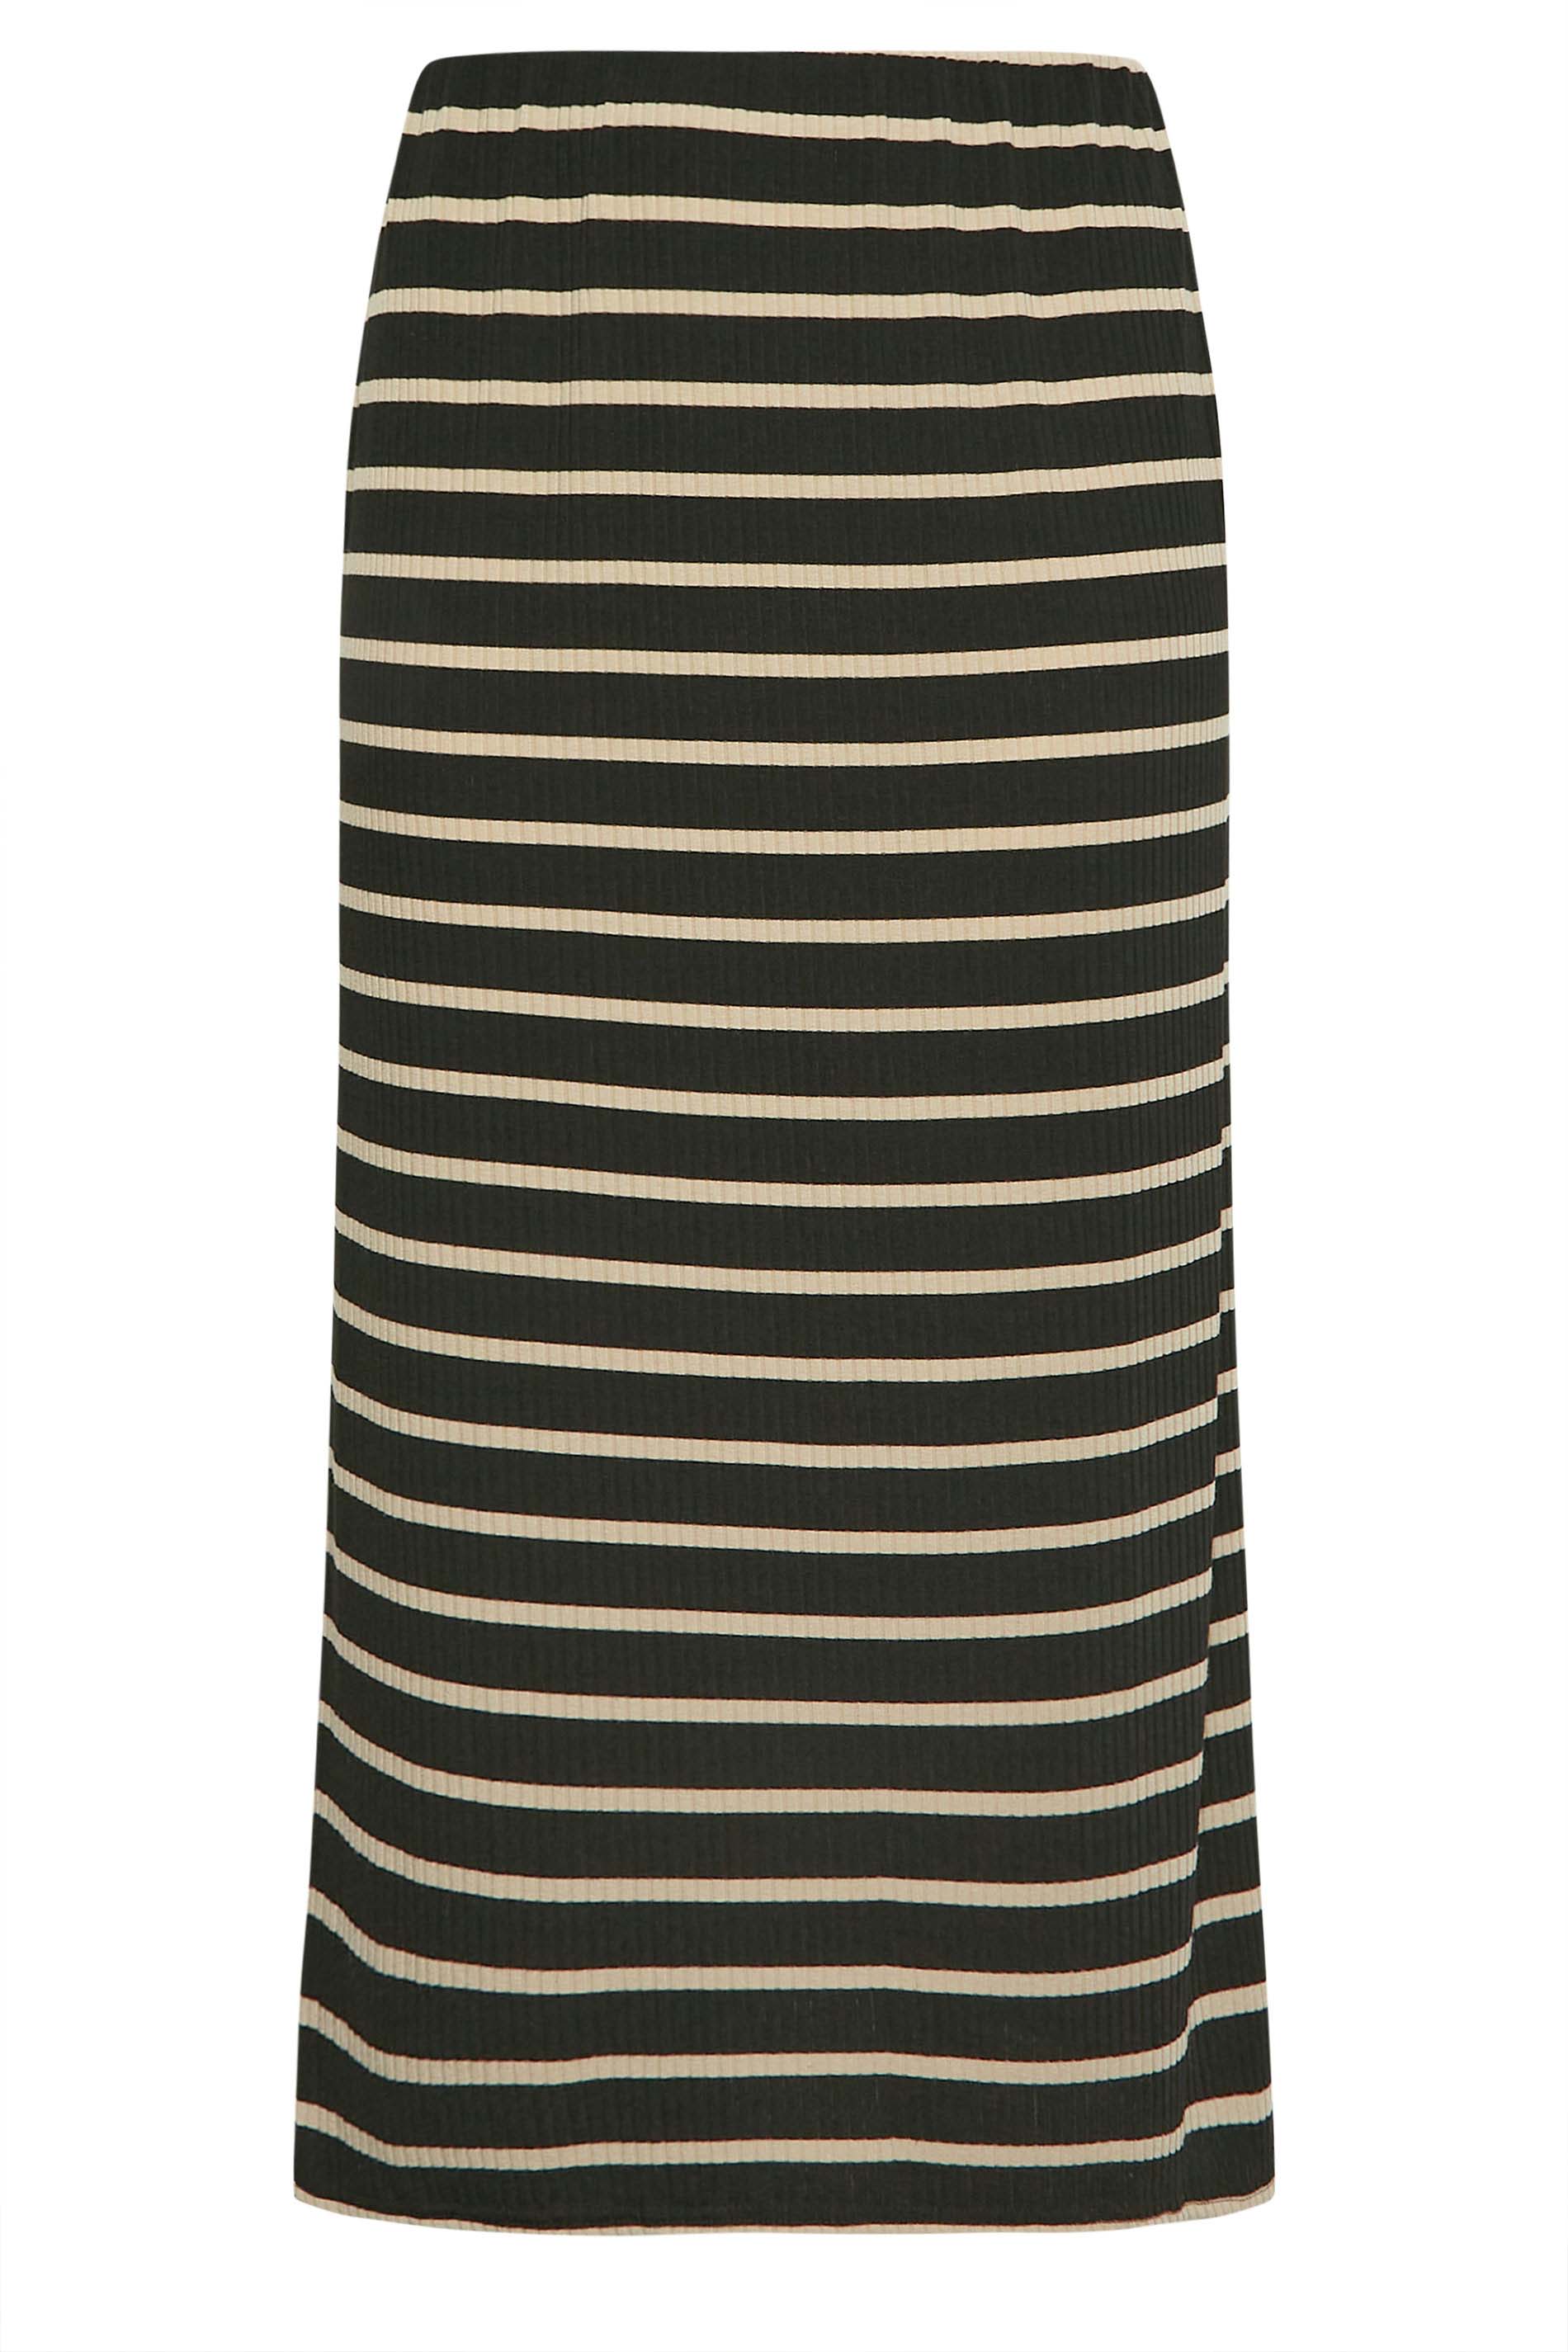 Shein Curve Black & White Stripe A-Line Dress 3XL